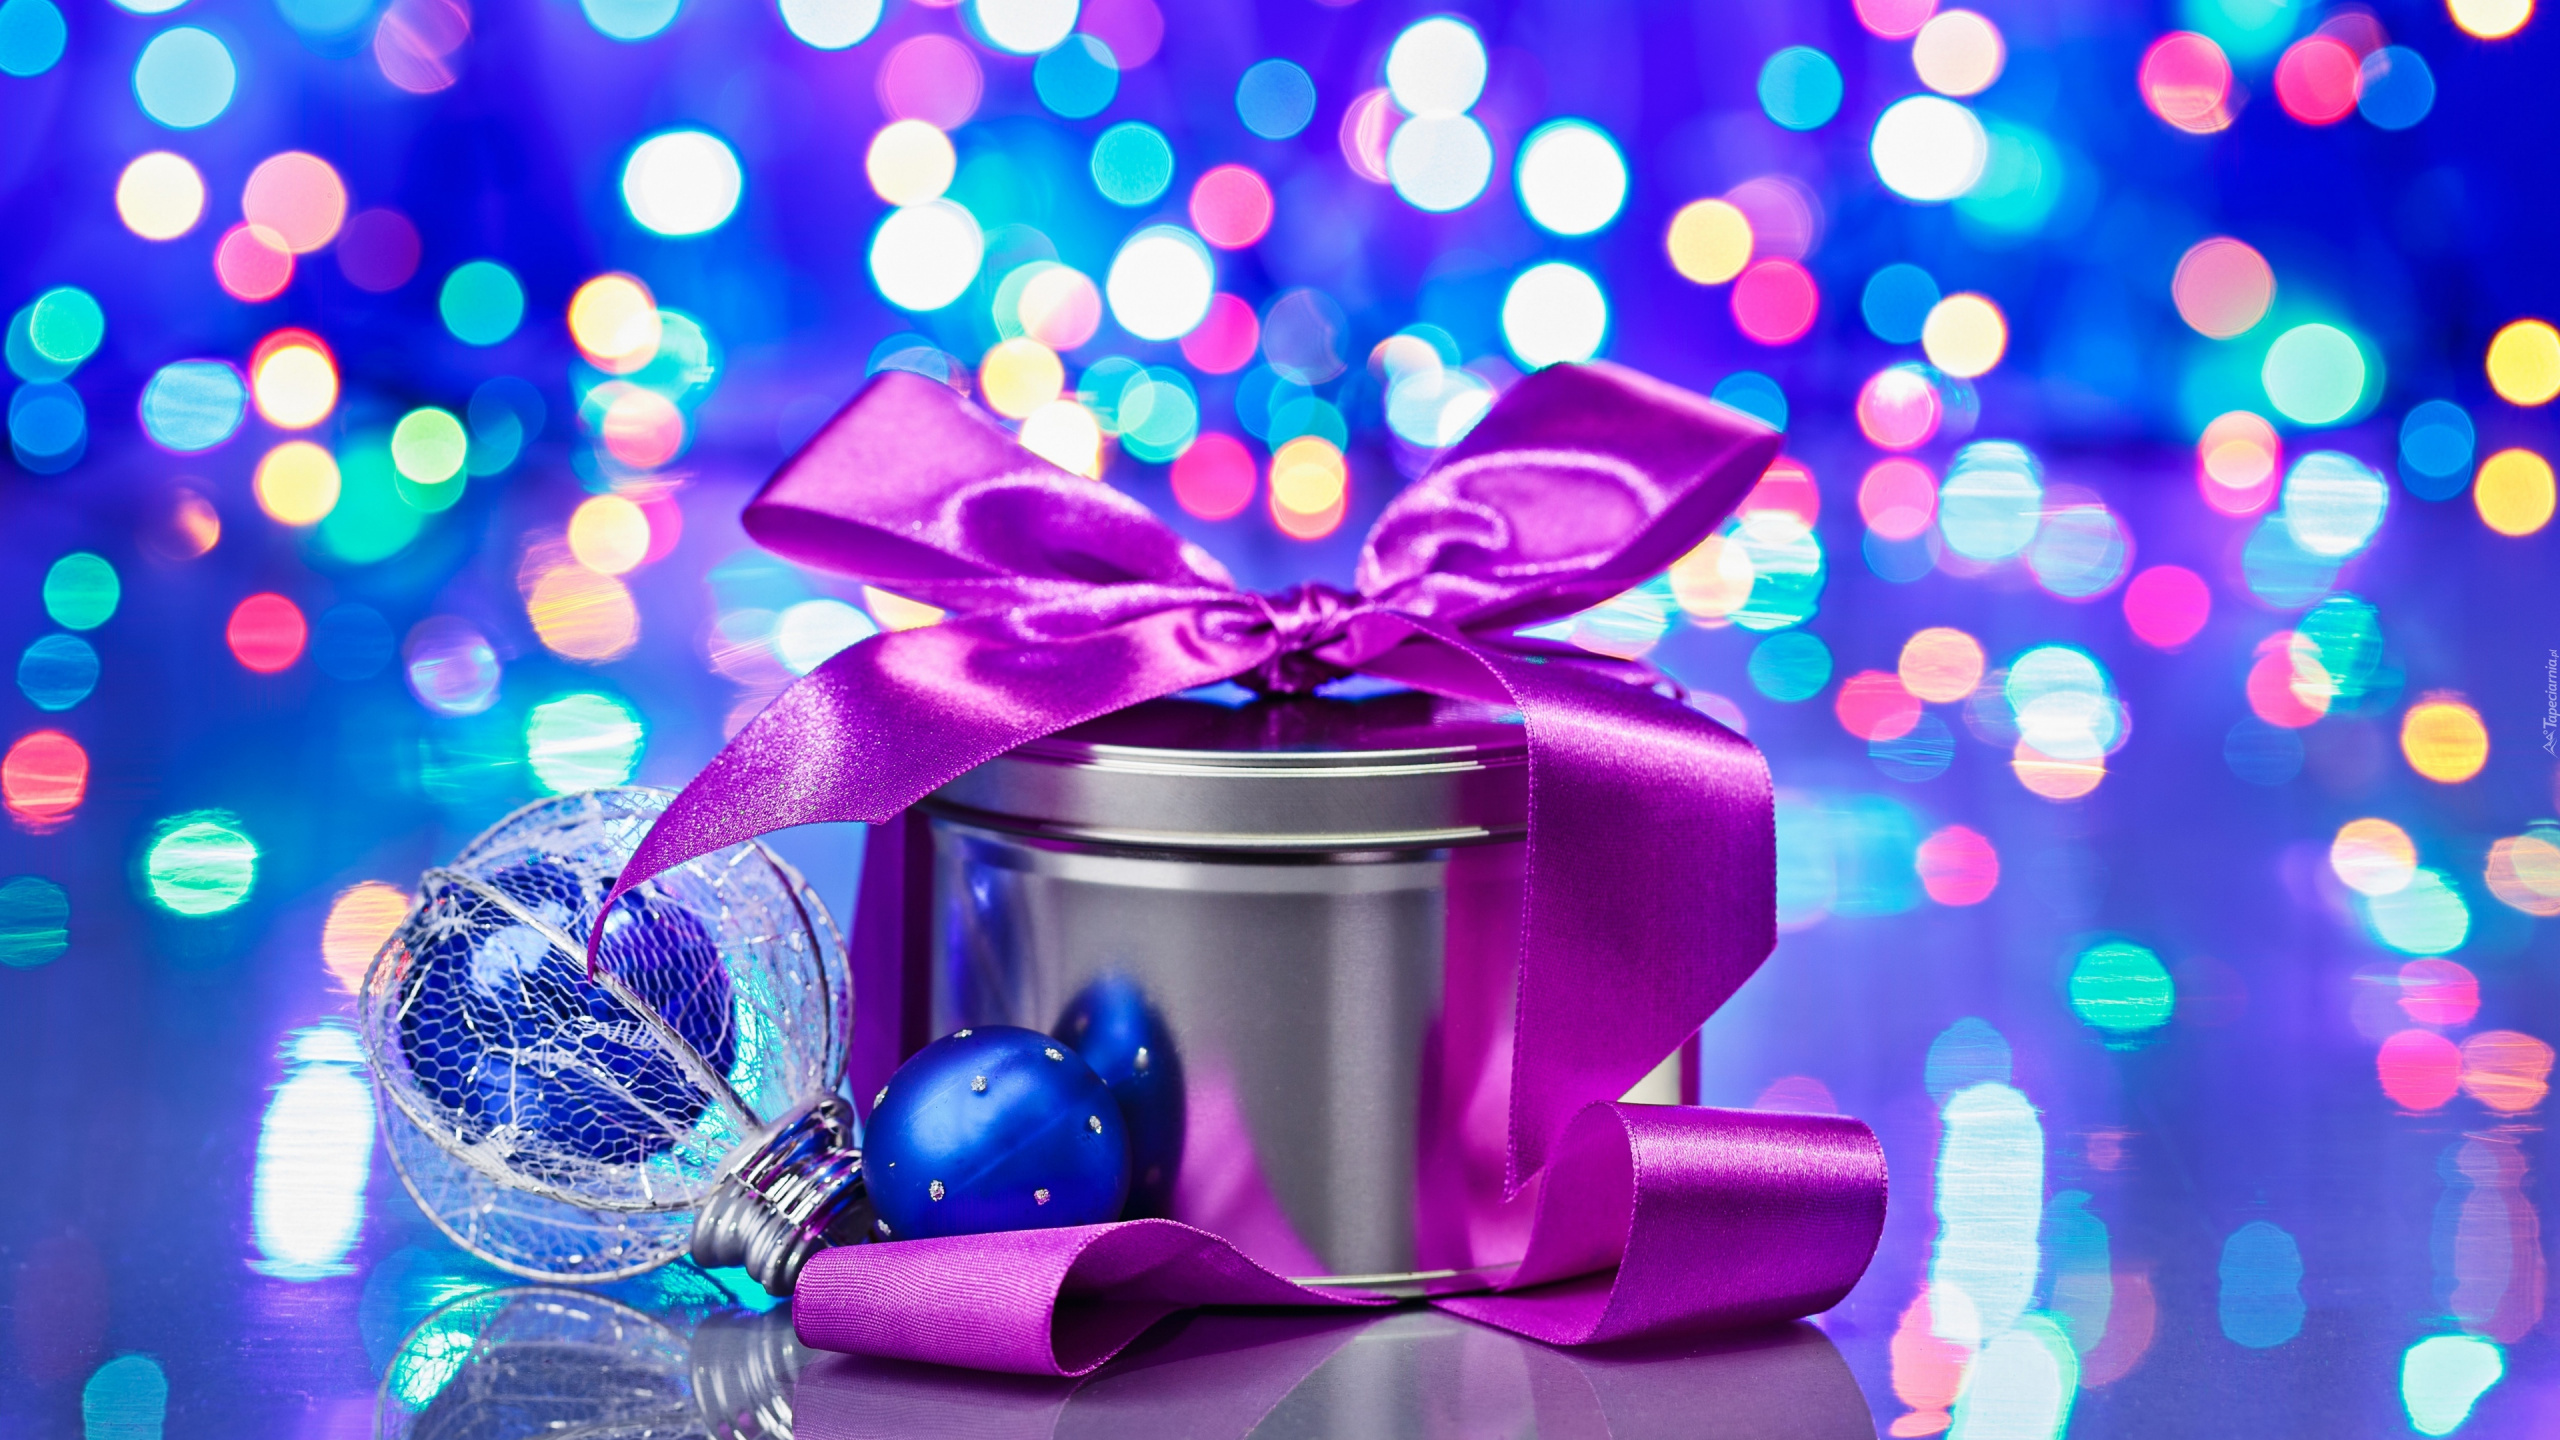 圣诞节那天, 新的一年, 紫色的, 紫罗兰色, 粉红色 壁纸 2560x1440 允许